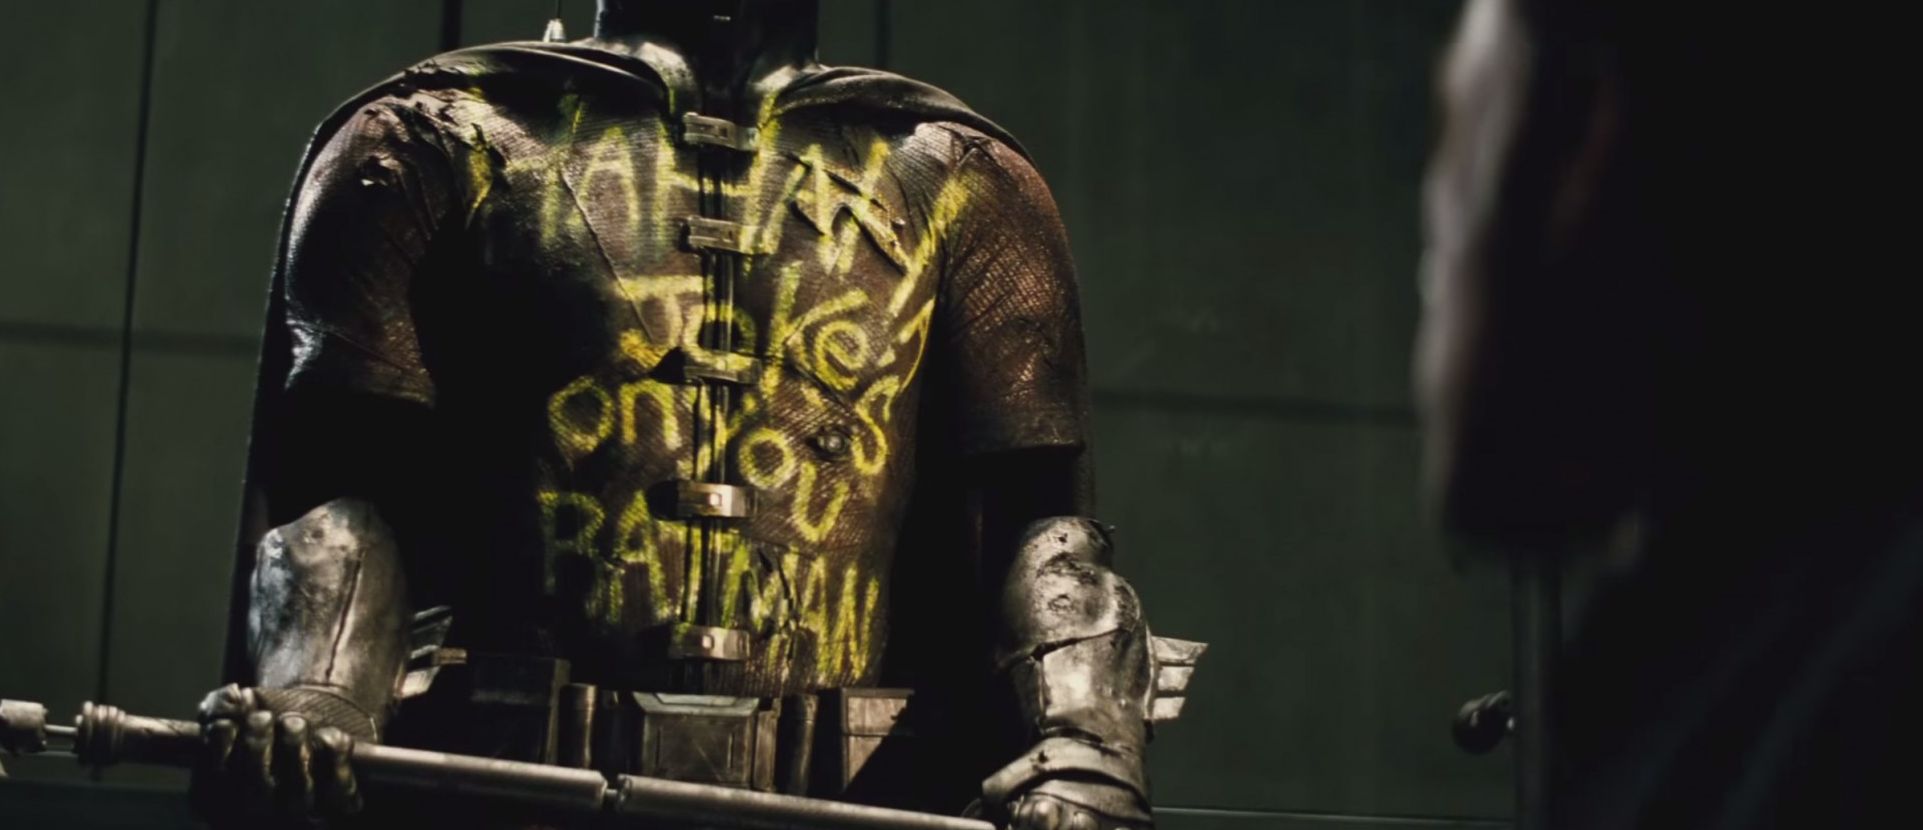 &quot;The Jokes on you Batman&quot; Robin Suit Graffiti